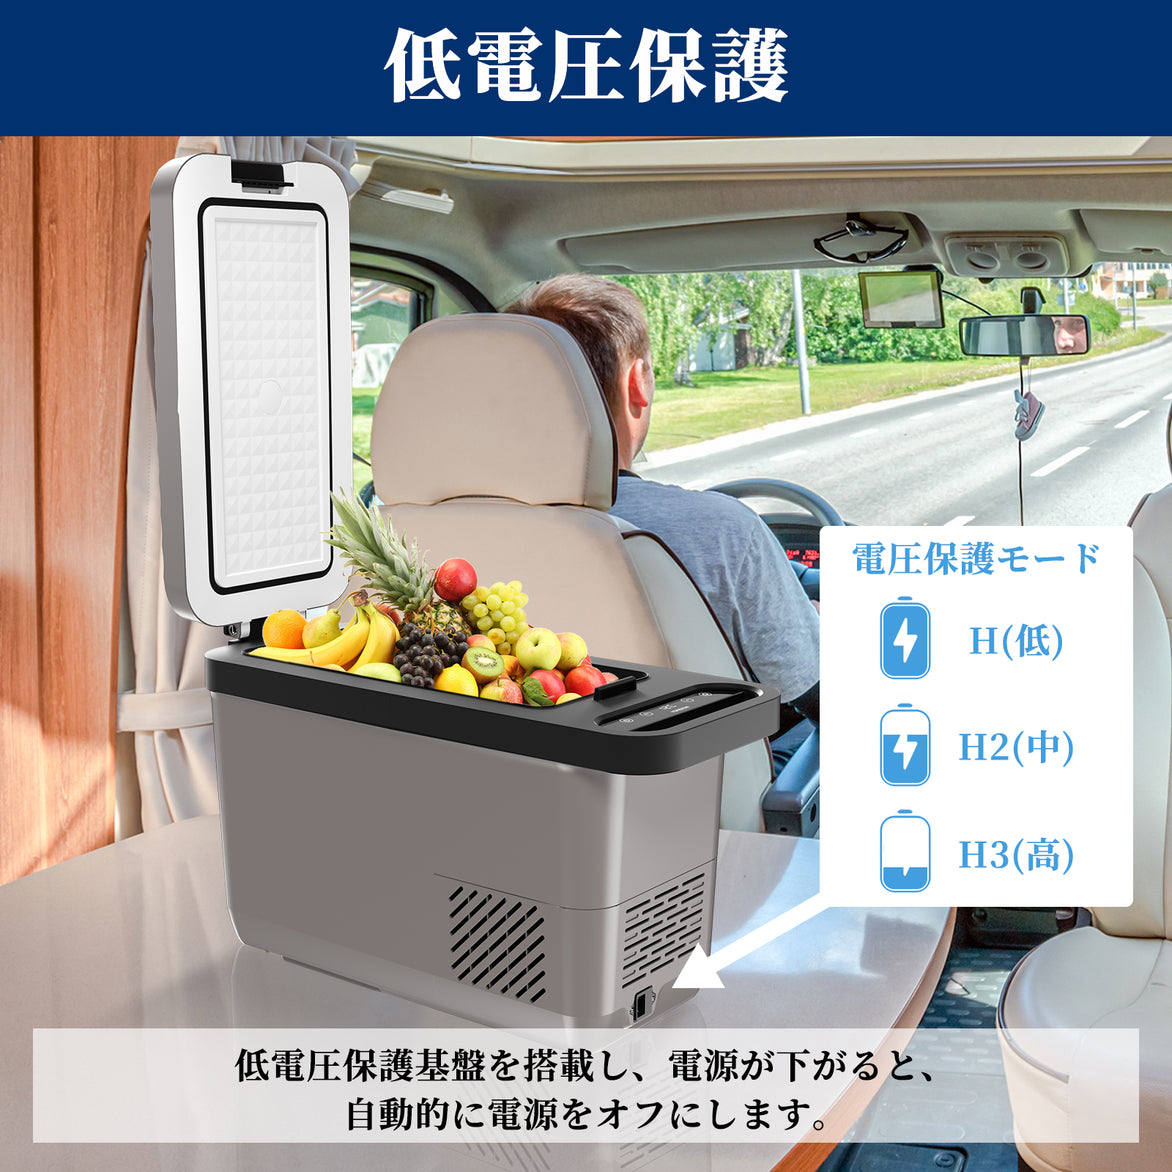 【 即日発送 送料無料⠀】コンパクト 冷蔵庫 車載用 車用